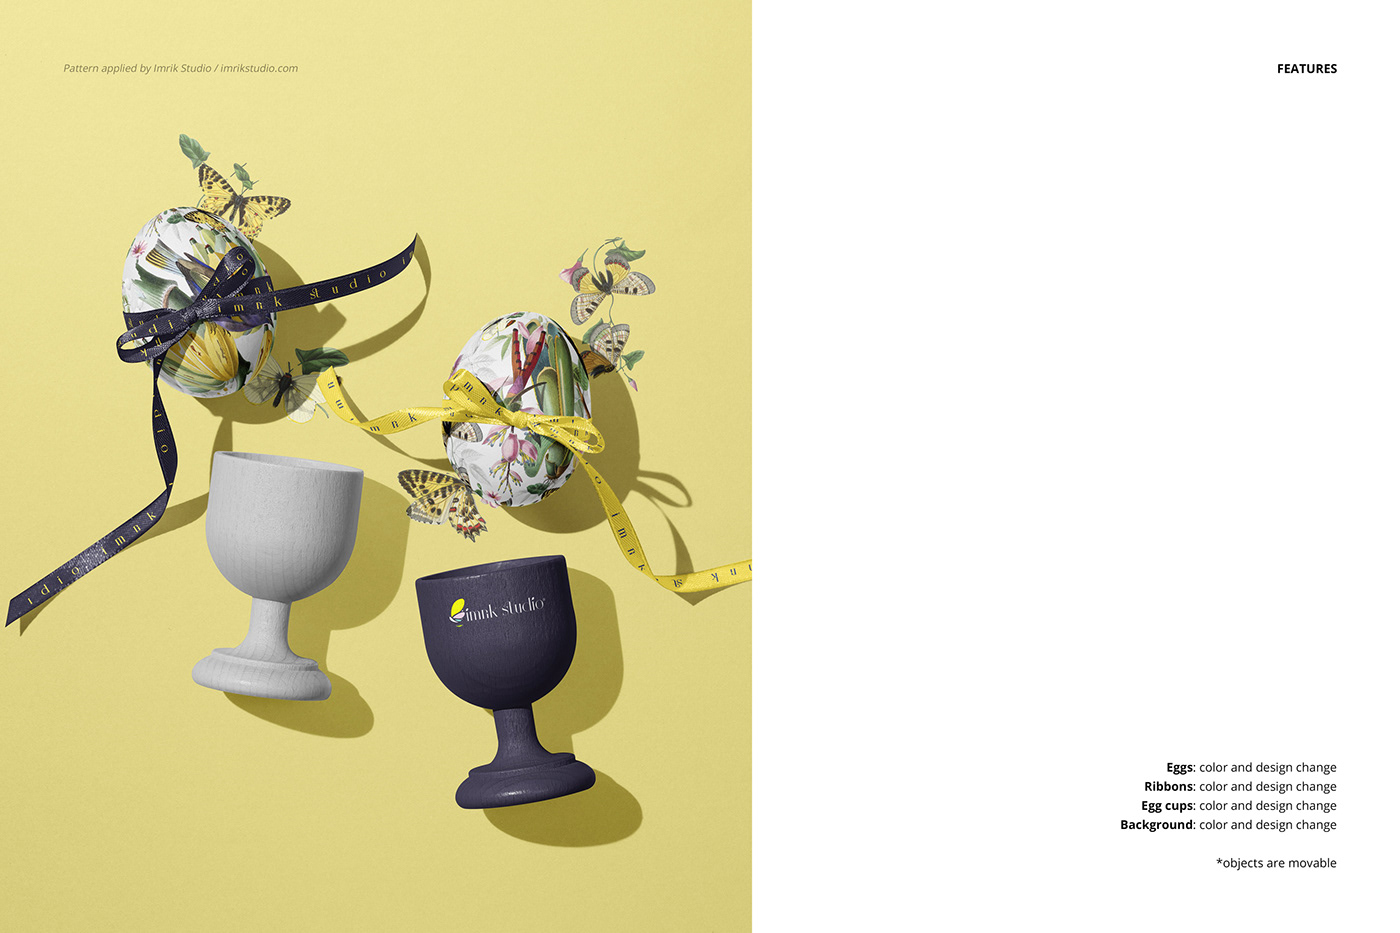 Easter Easter Egg Mockup mockups branding  modern Photography  Holiday ILLUSTRATION  Digital Art 